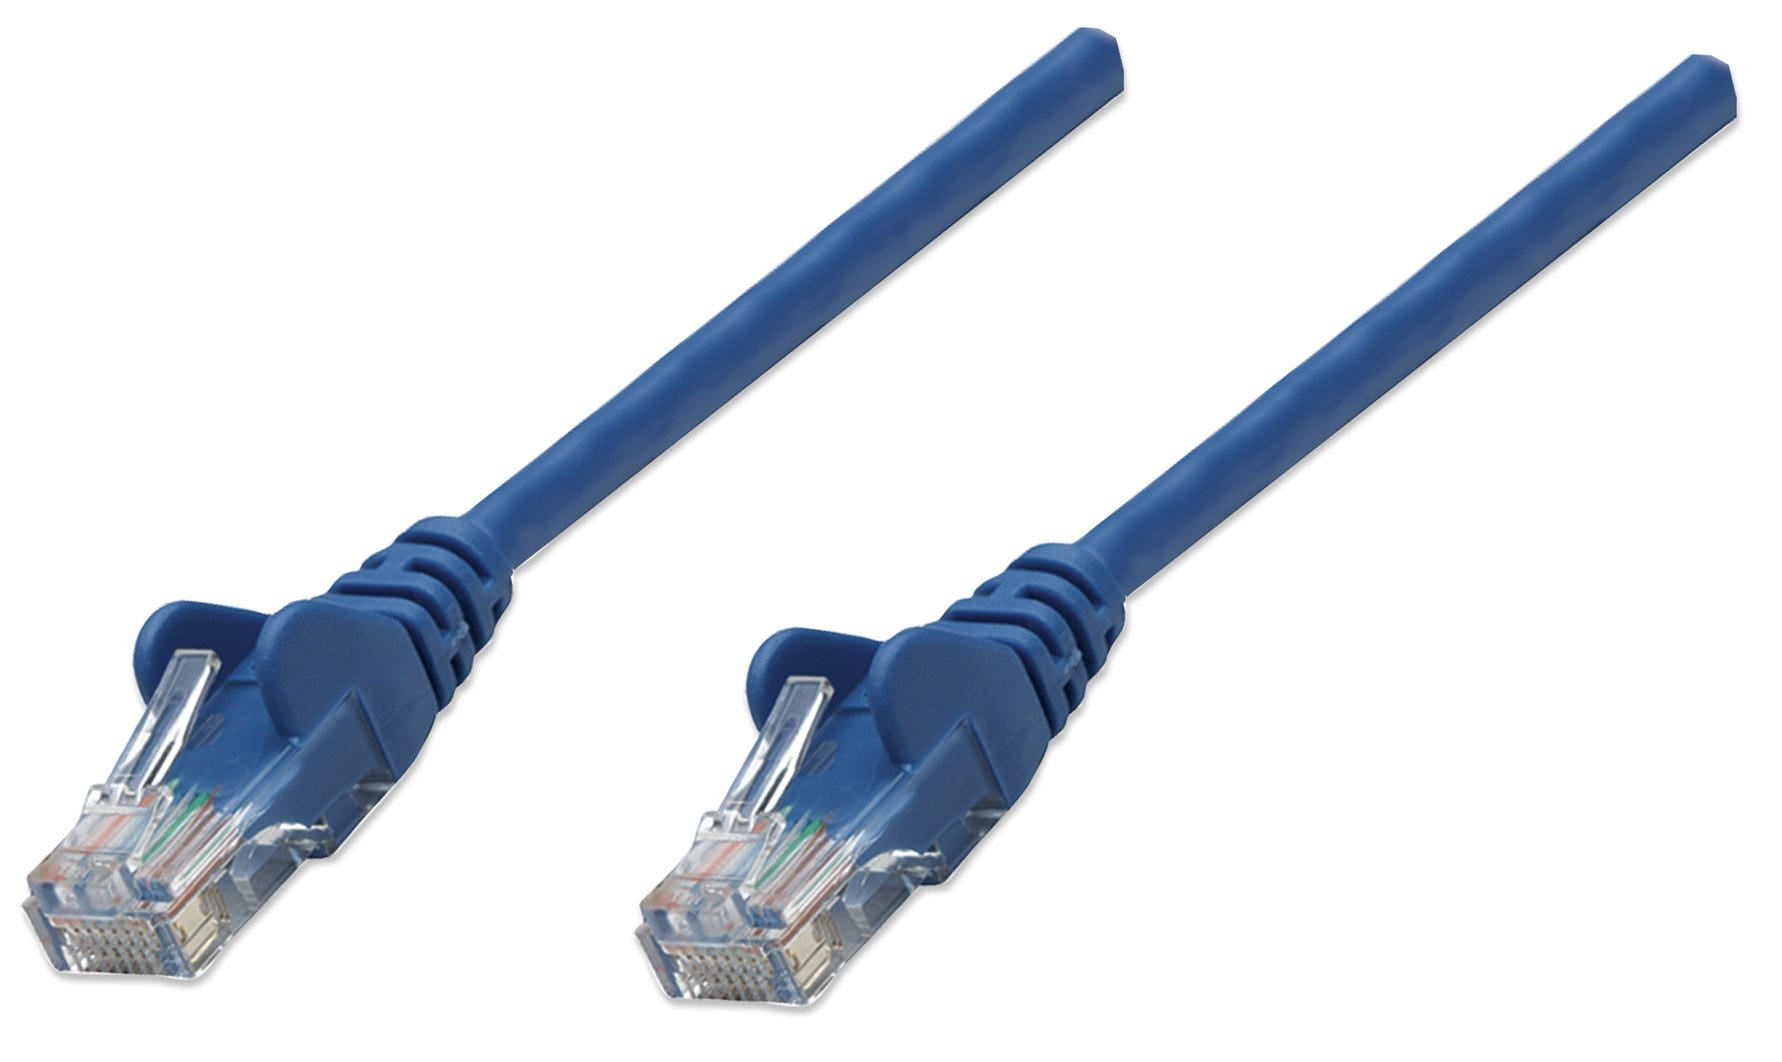 Cable De Red Cat6 Intellinet 343305 Patch 5.0M Utp Azul